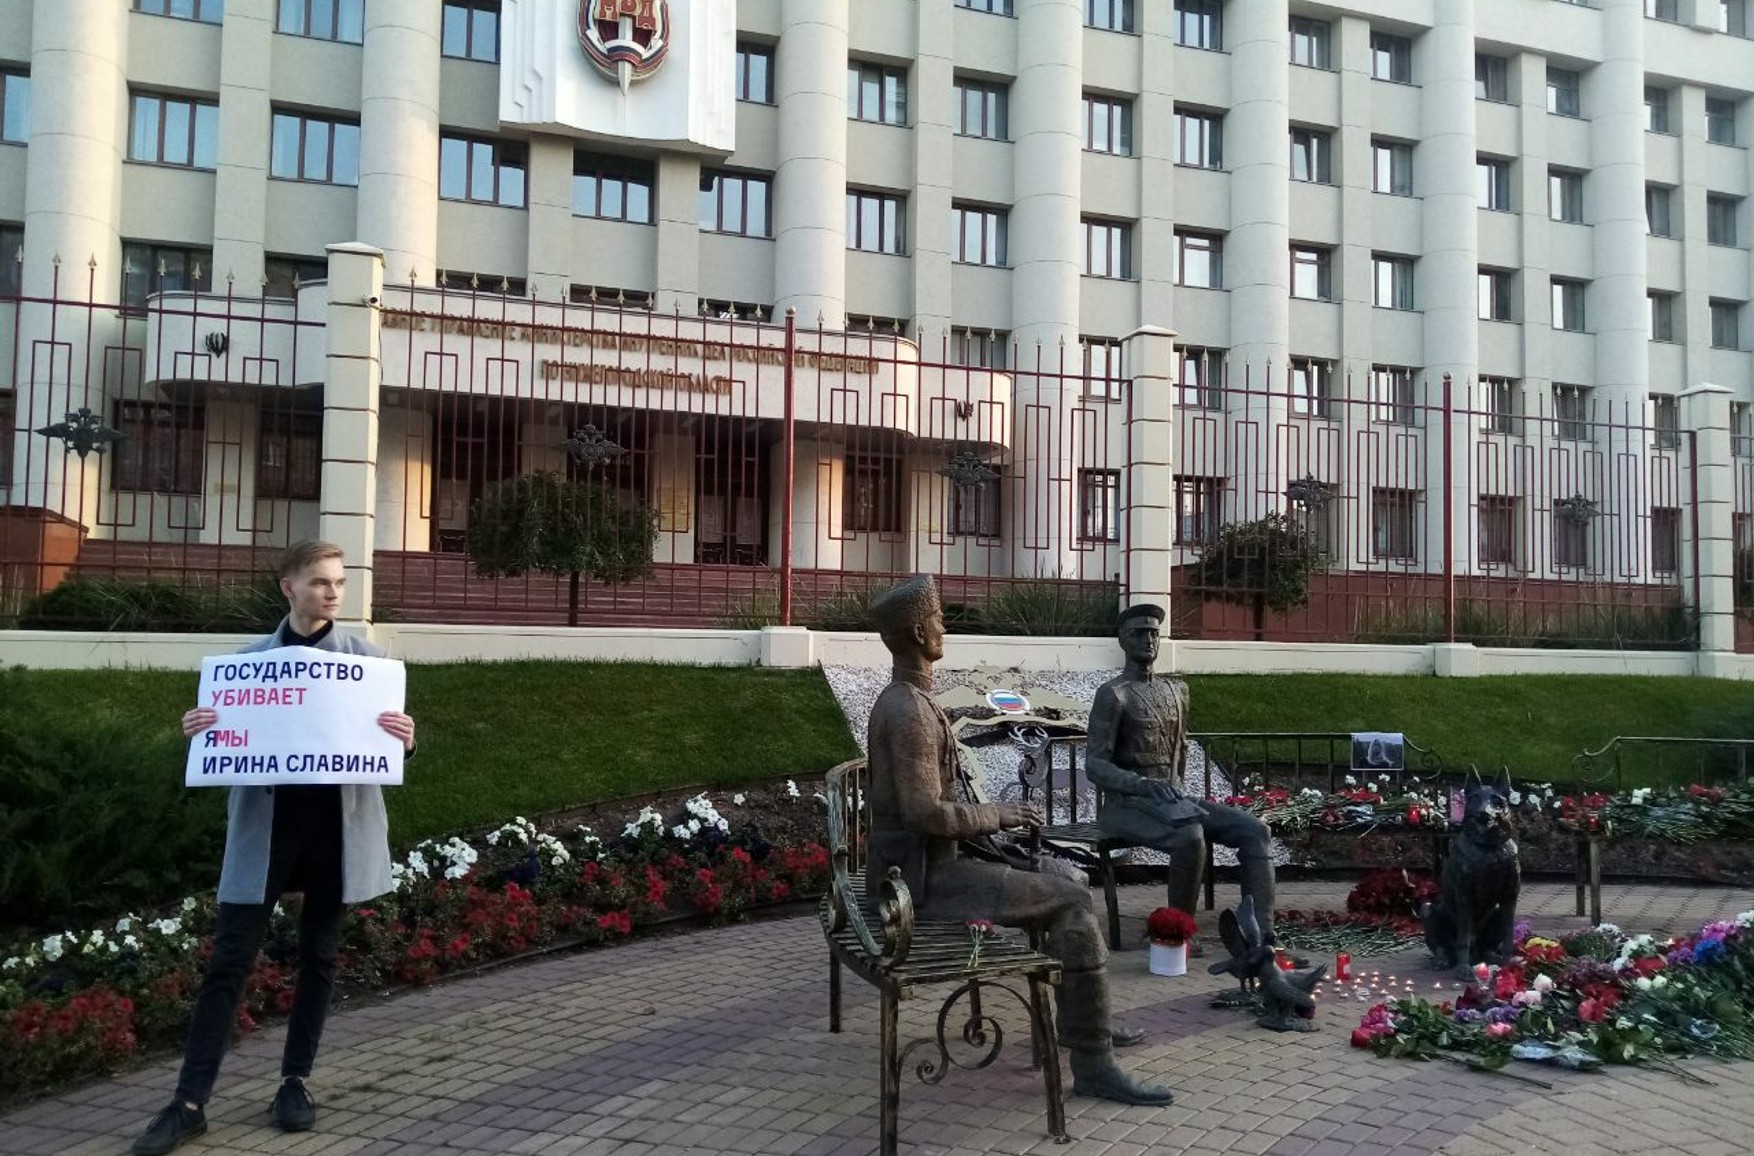 У Нижньому Новгороді поліція знову розібрала меморіал Ірині Славіної. Активісти збираються відновити його